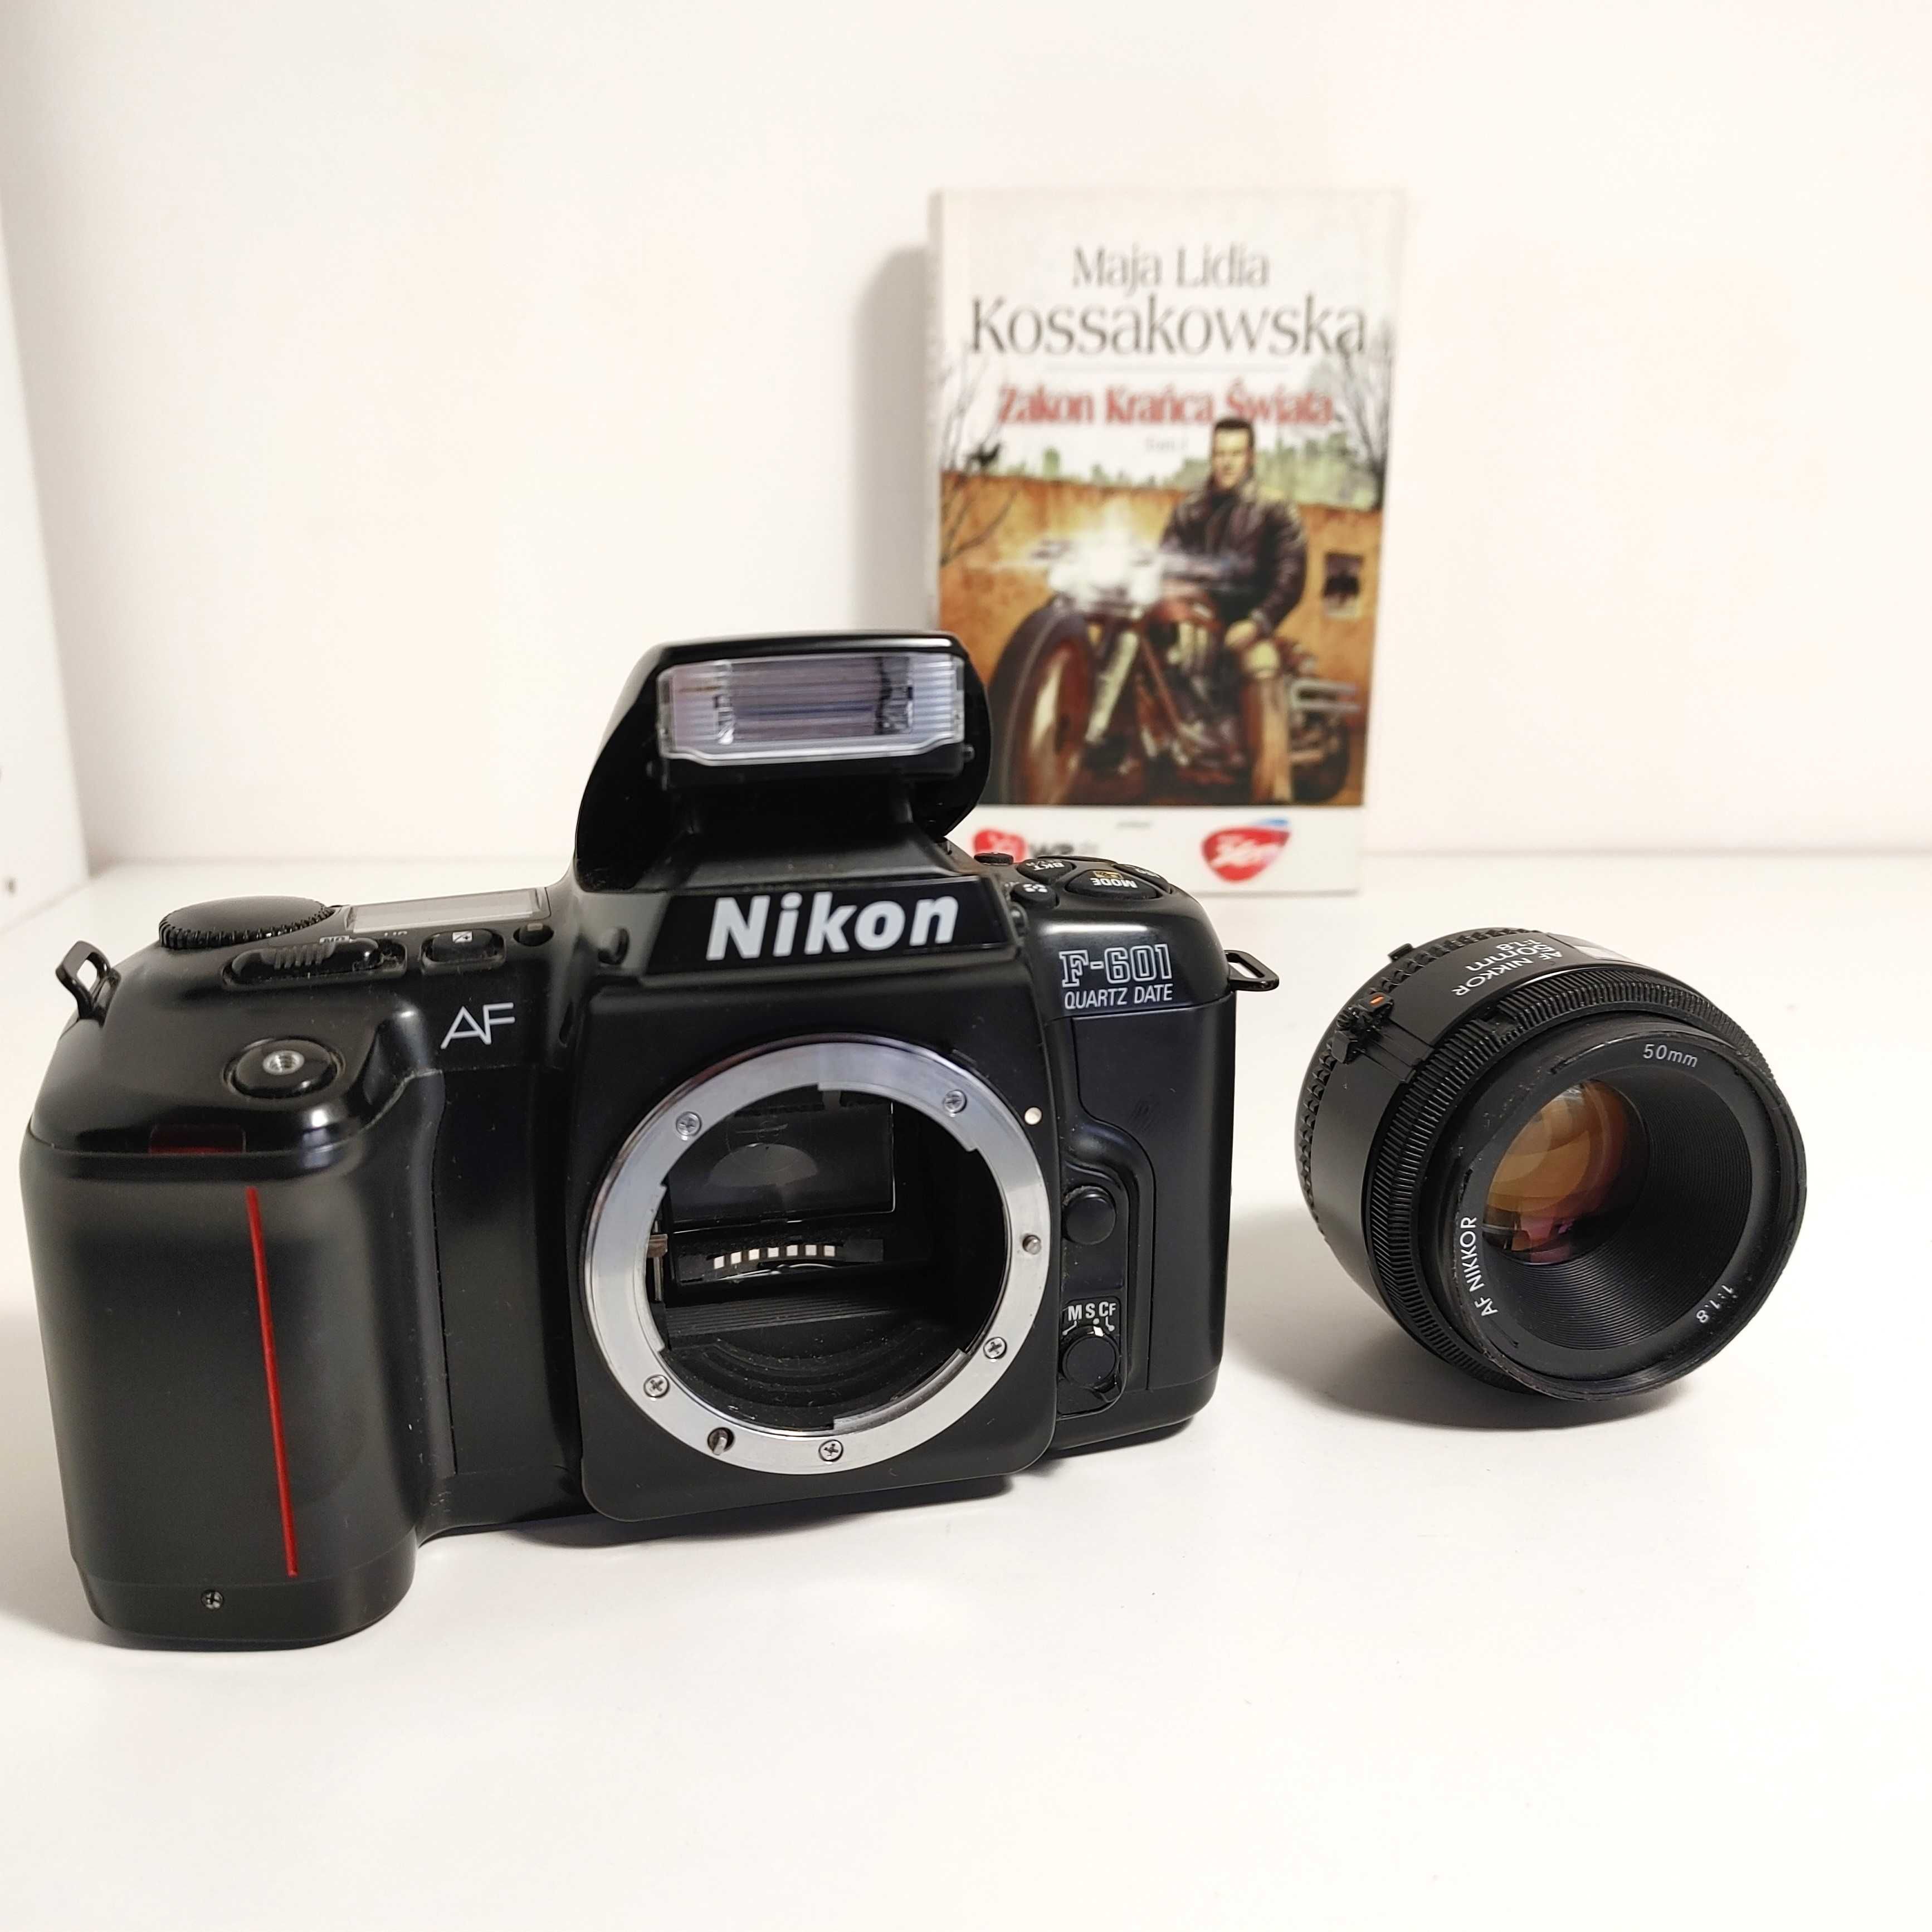 Analogowa Lustrzanka Nikon F-601  Quartz Date AF z NIKKOR 50 mm 1:1,8